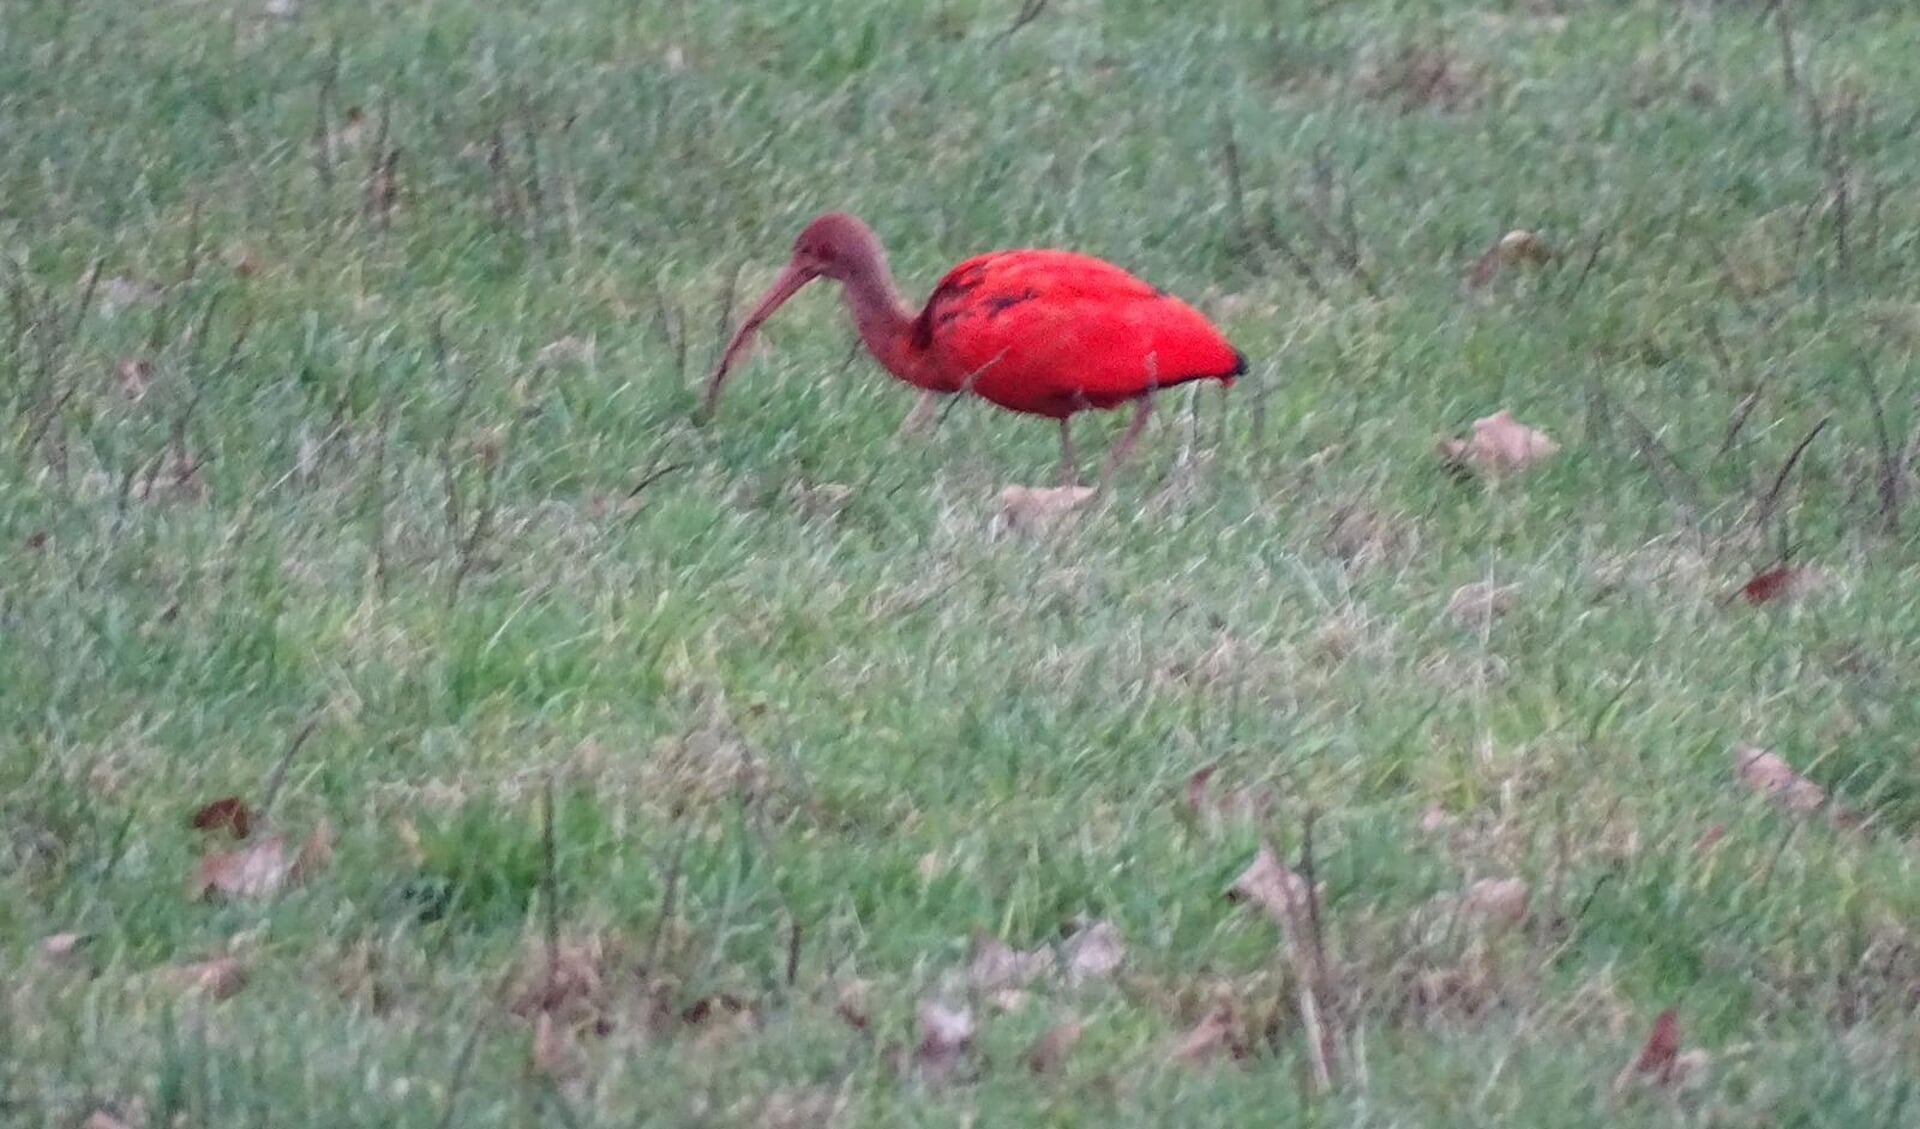 De foto van de rode ibis.